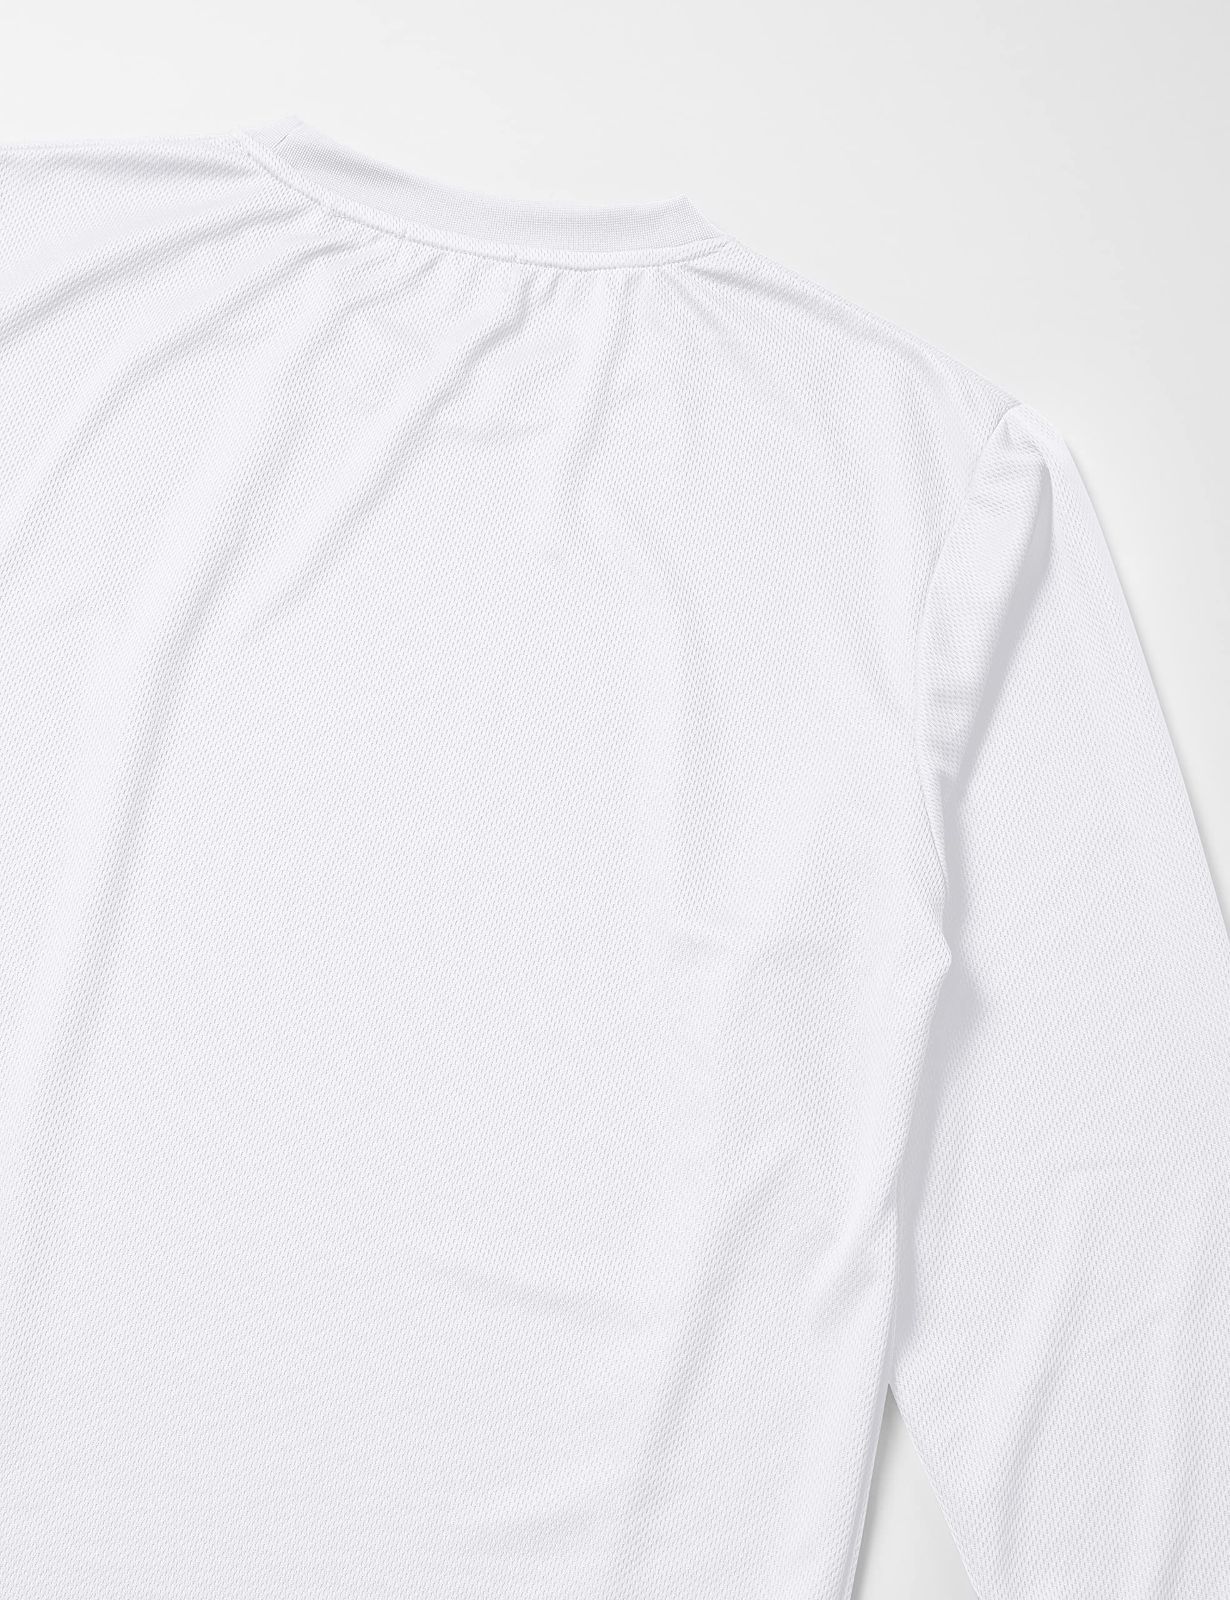 フィラ Tシャツ Men's ワンポイント刺繍DRY長袖Tシャツ FH7453